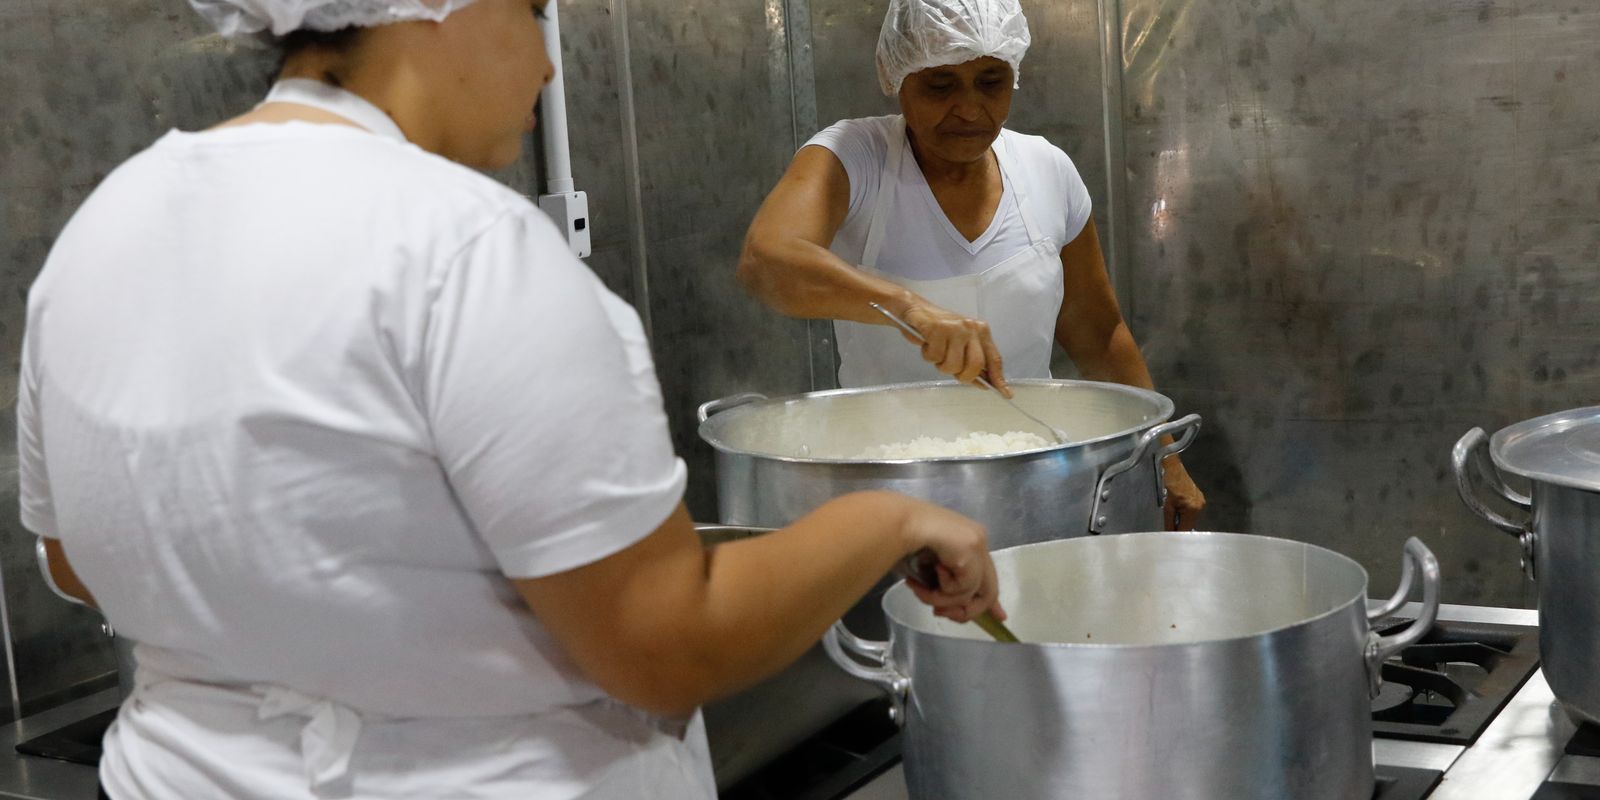 Iniciativa de entrega de marmitas é transformada em cozinha escola | Agência  Brasil